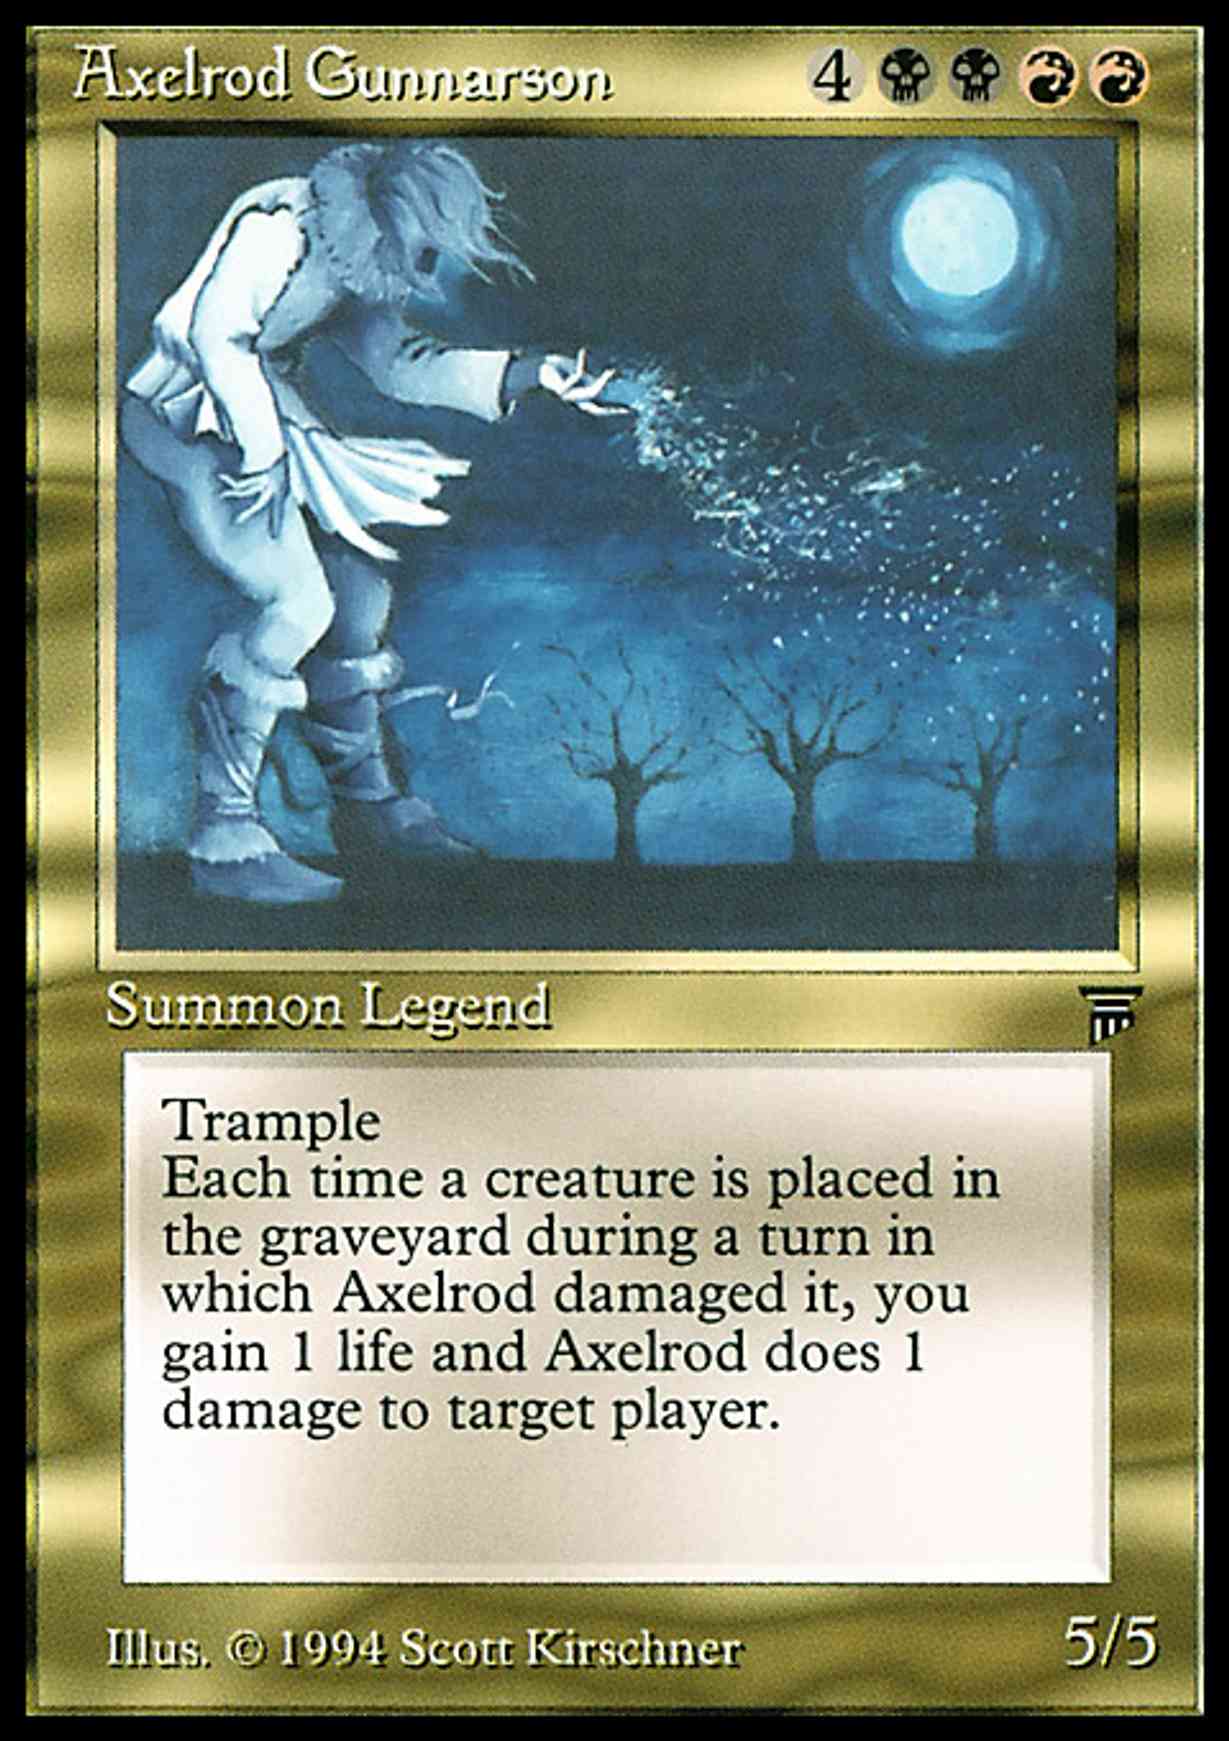 Axelrod Gunnarson magic card front